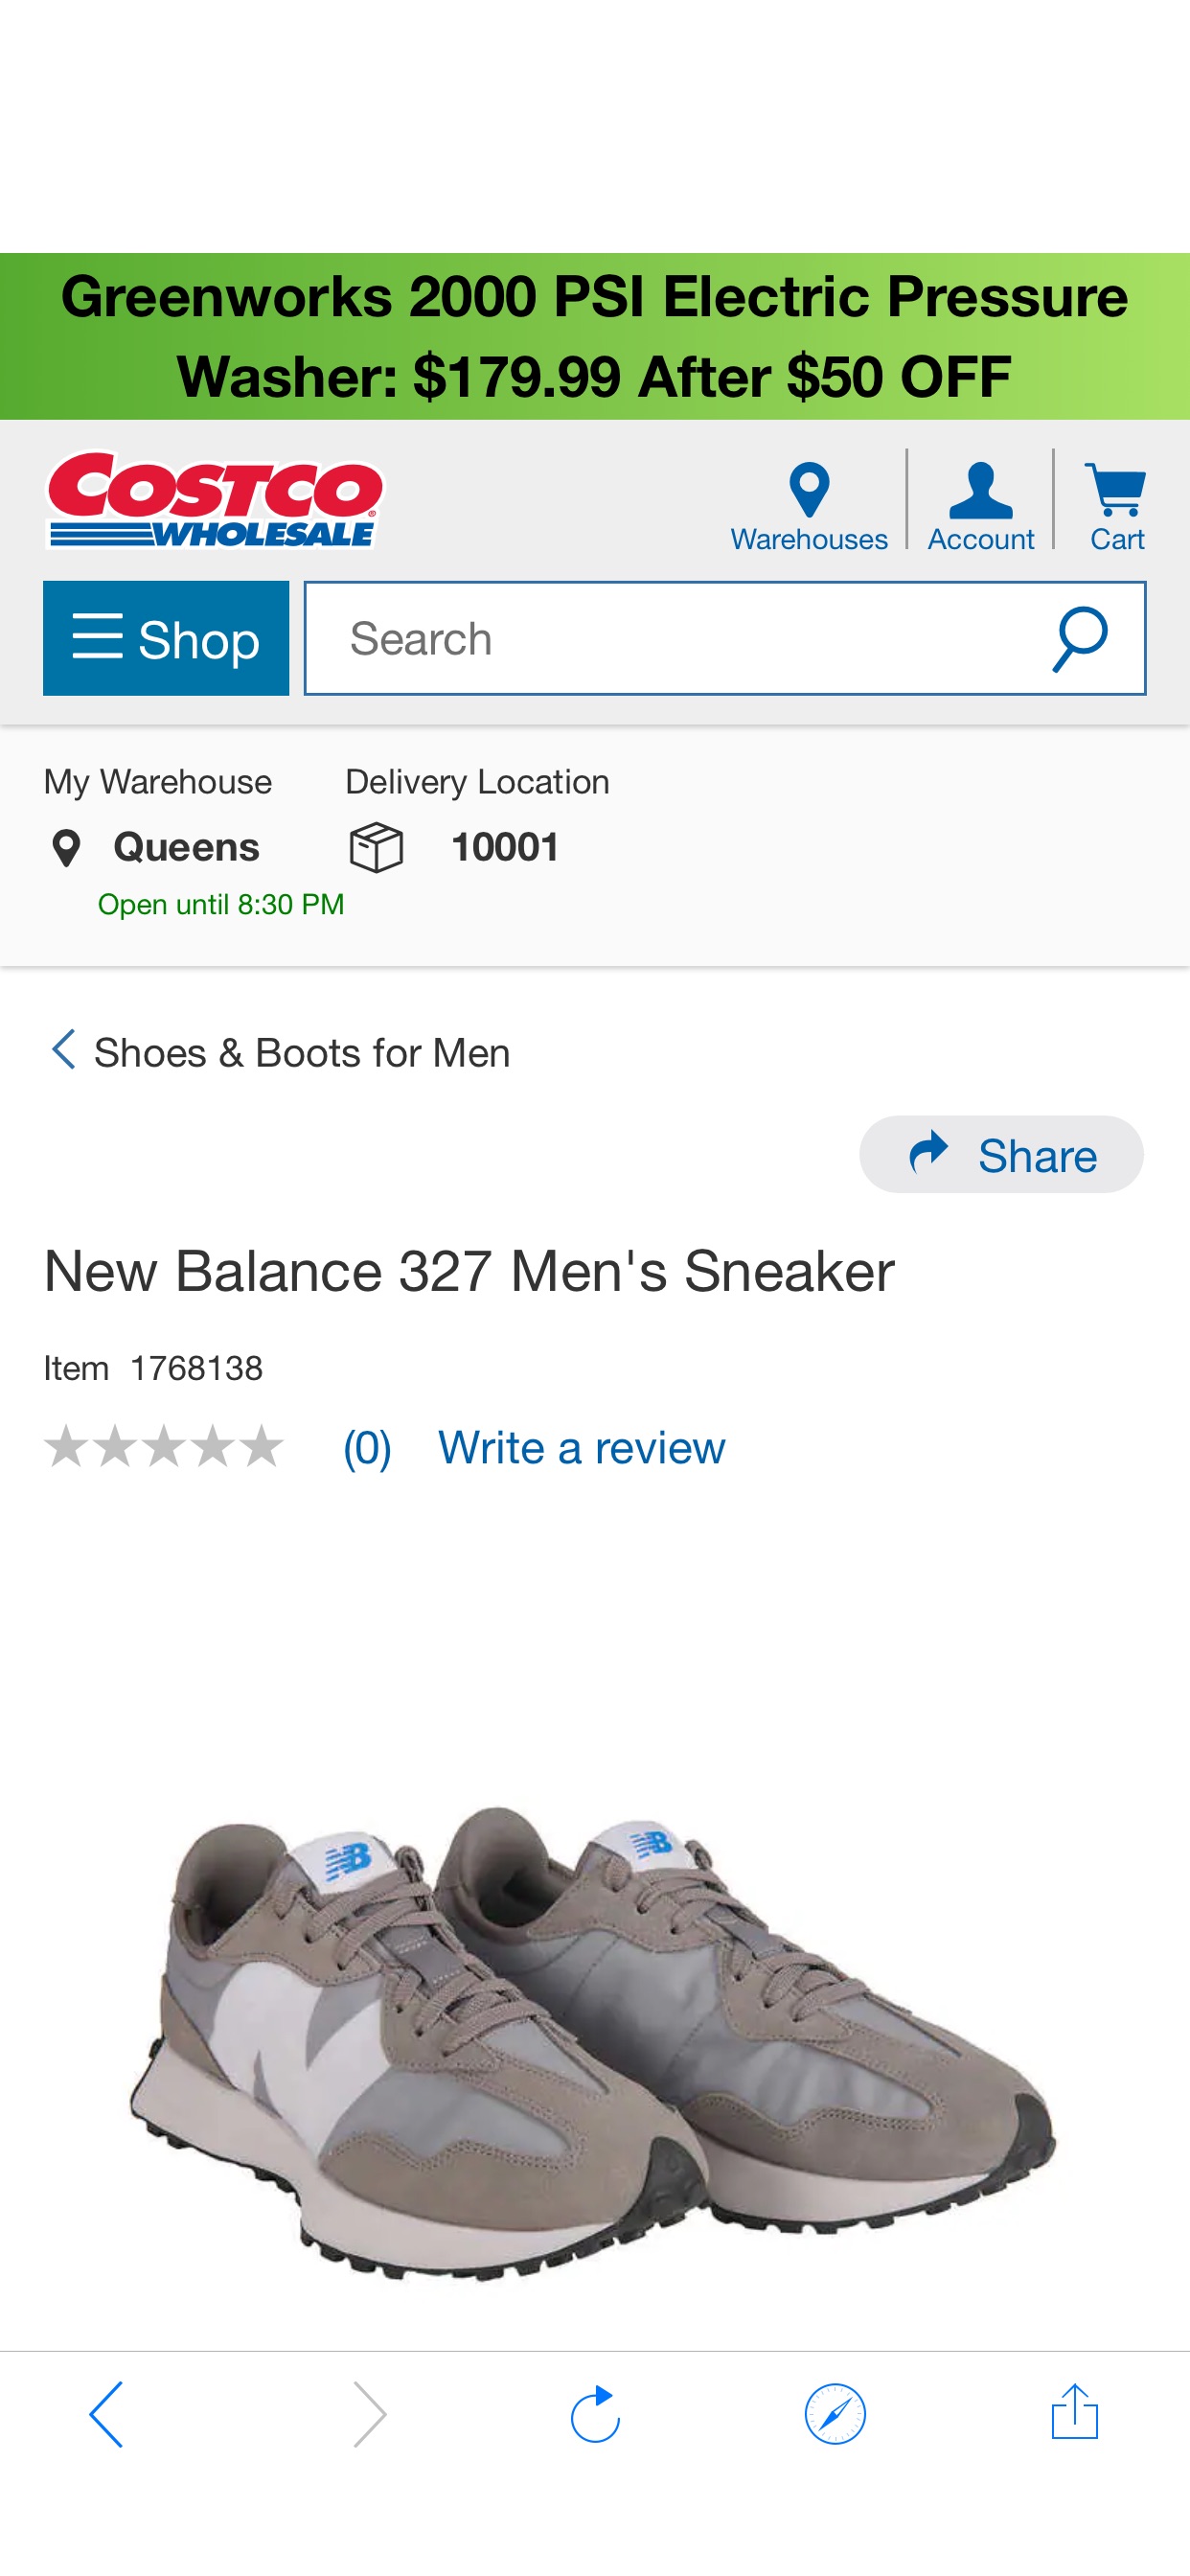 costco上新男鞋New Balance 327 Men's Sneaker | Costco